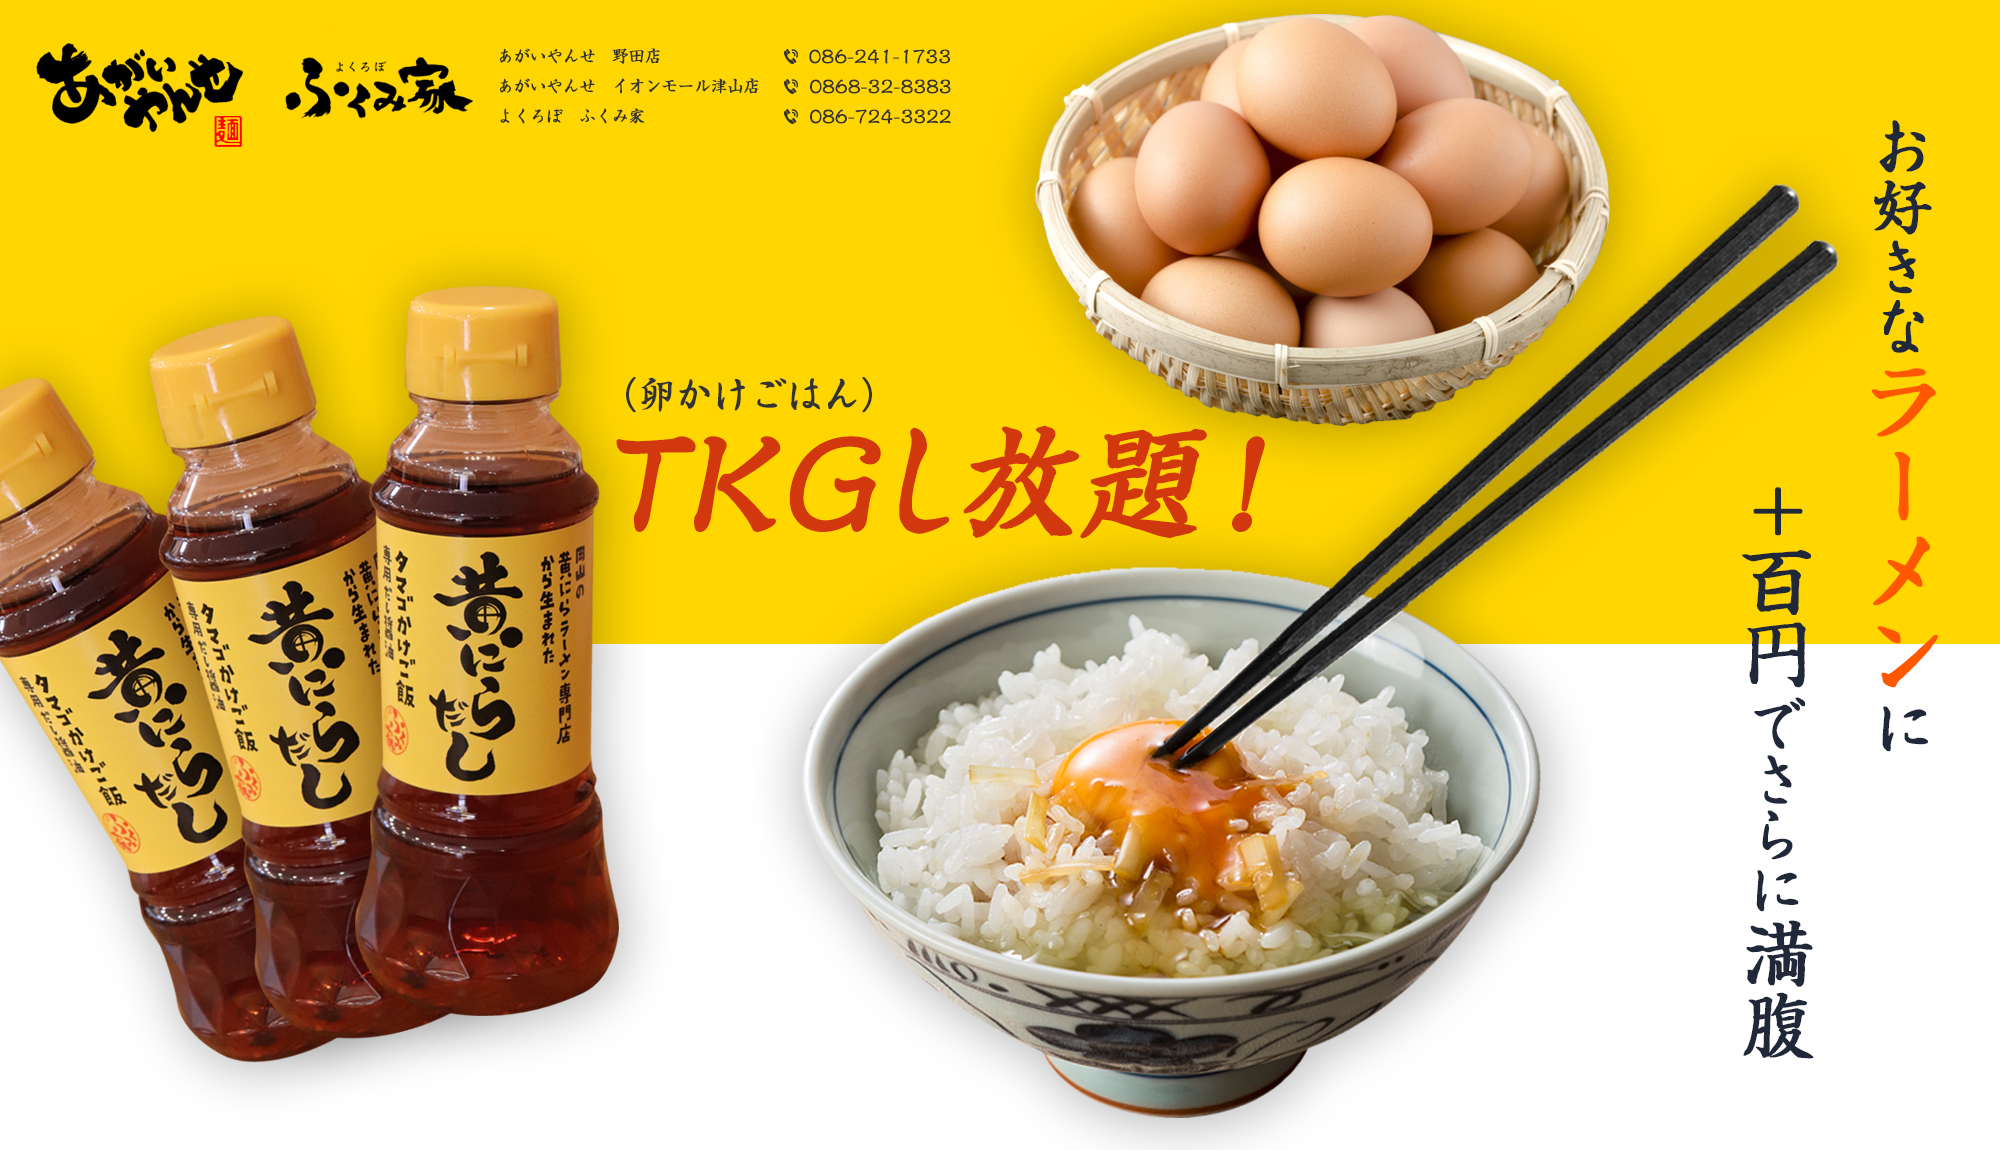 TKG（卵かけごはん）し放題！お好きなラーメンにプラス百円でさらに満腹